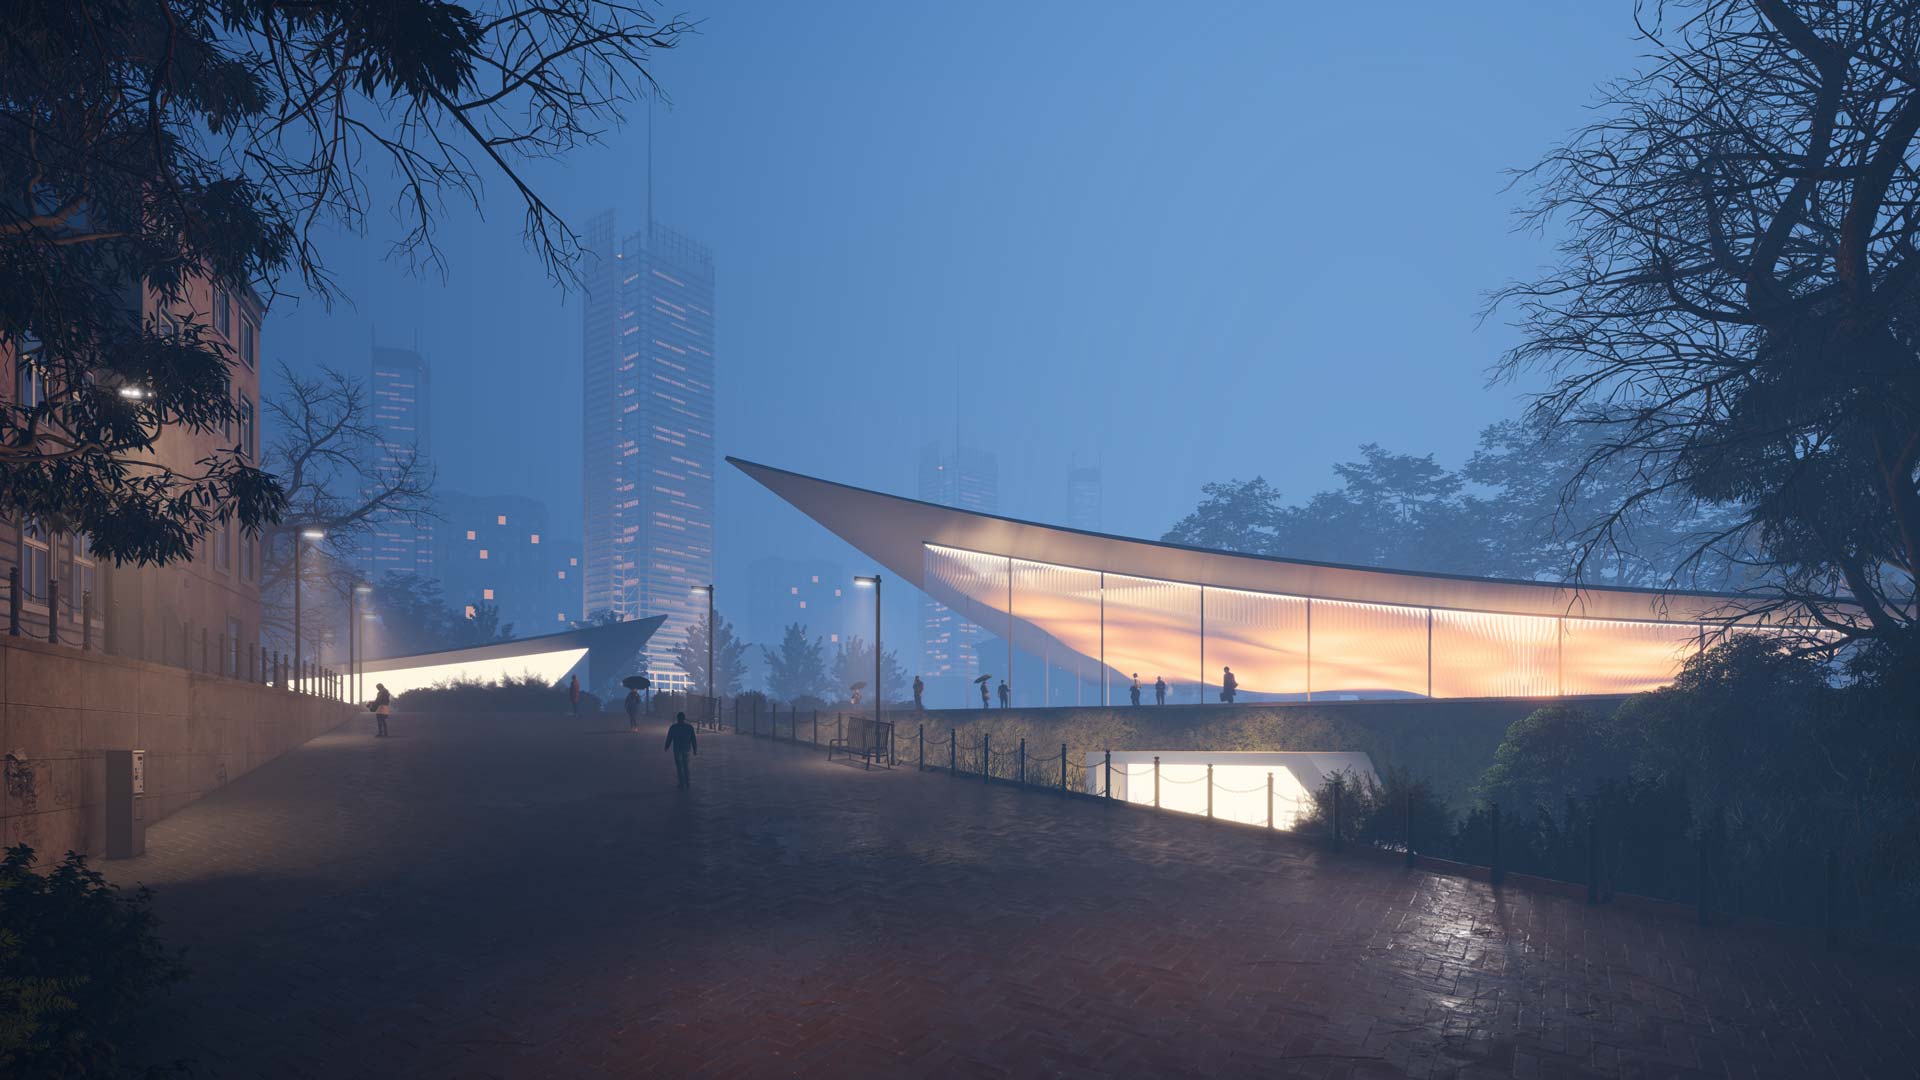 Architekturvisualisierung von Gebäuden im Nebel mit Lumion